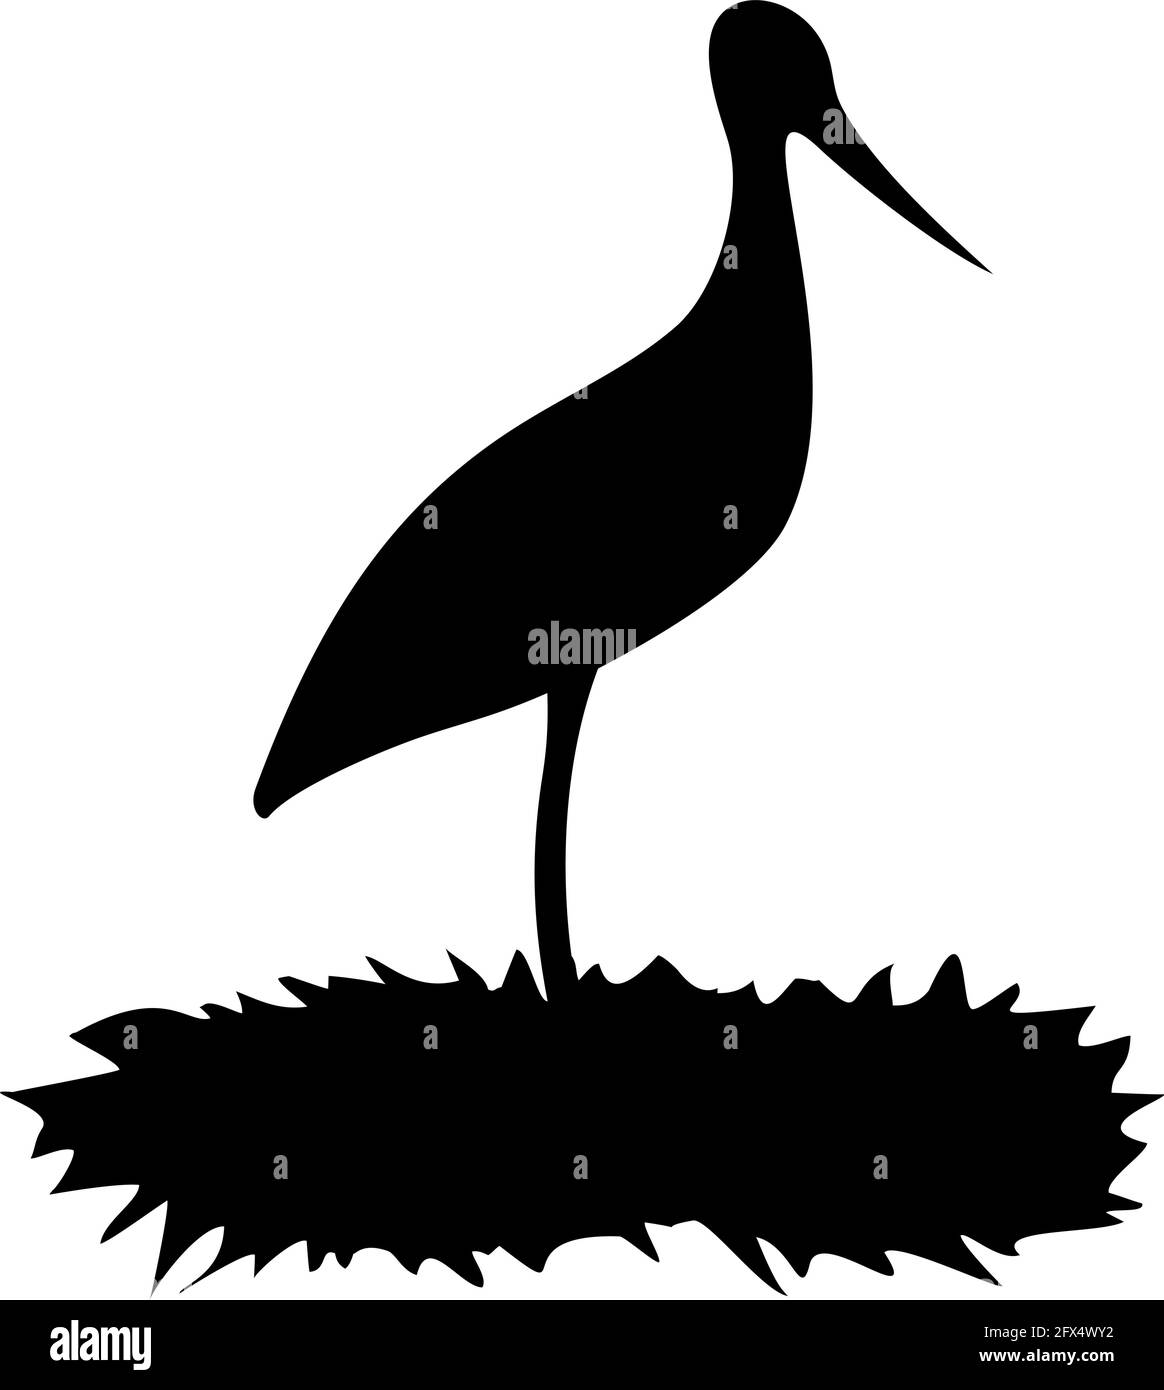 stork in nest illustration Stock Vector